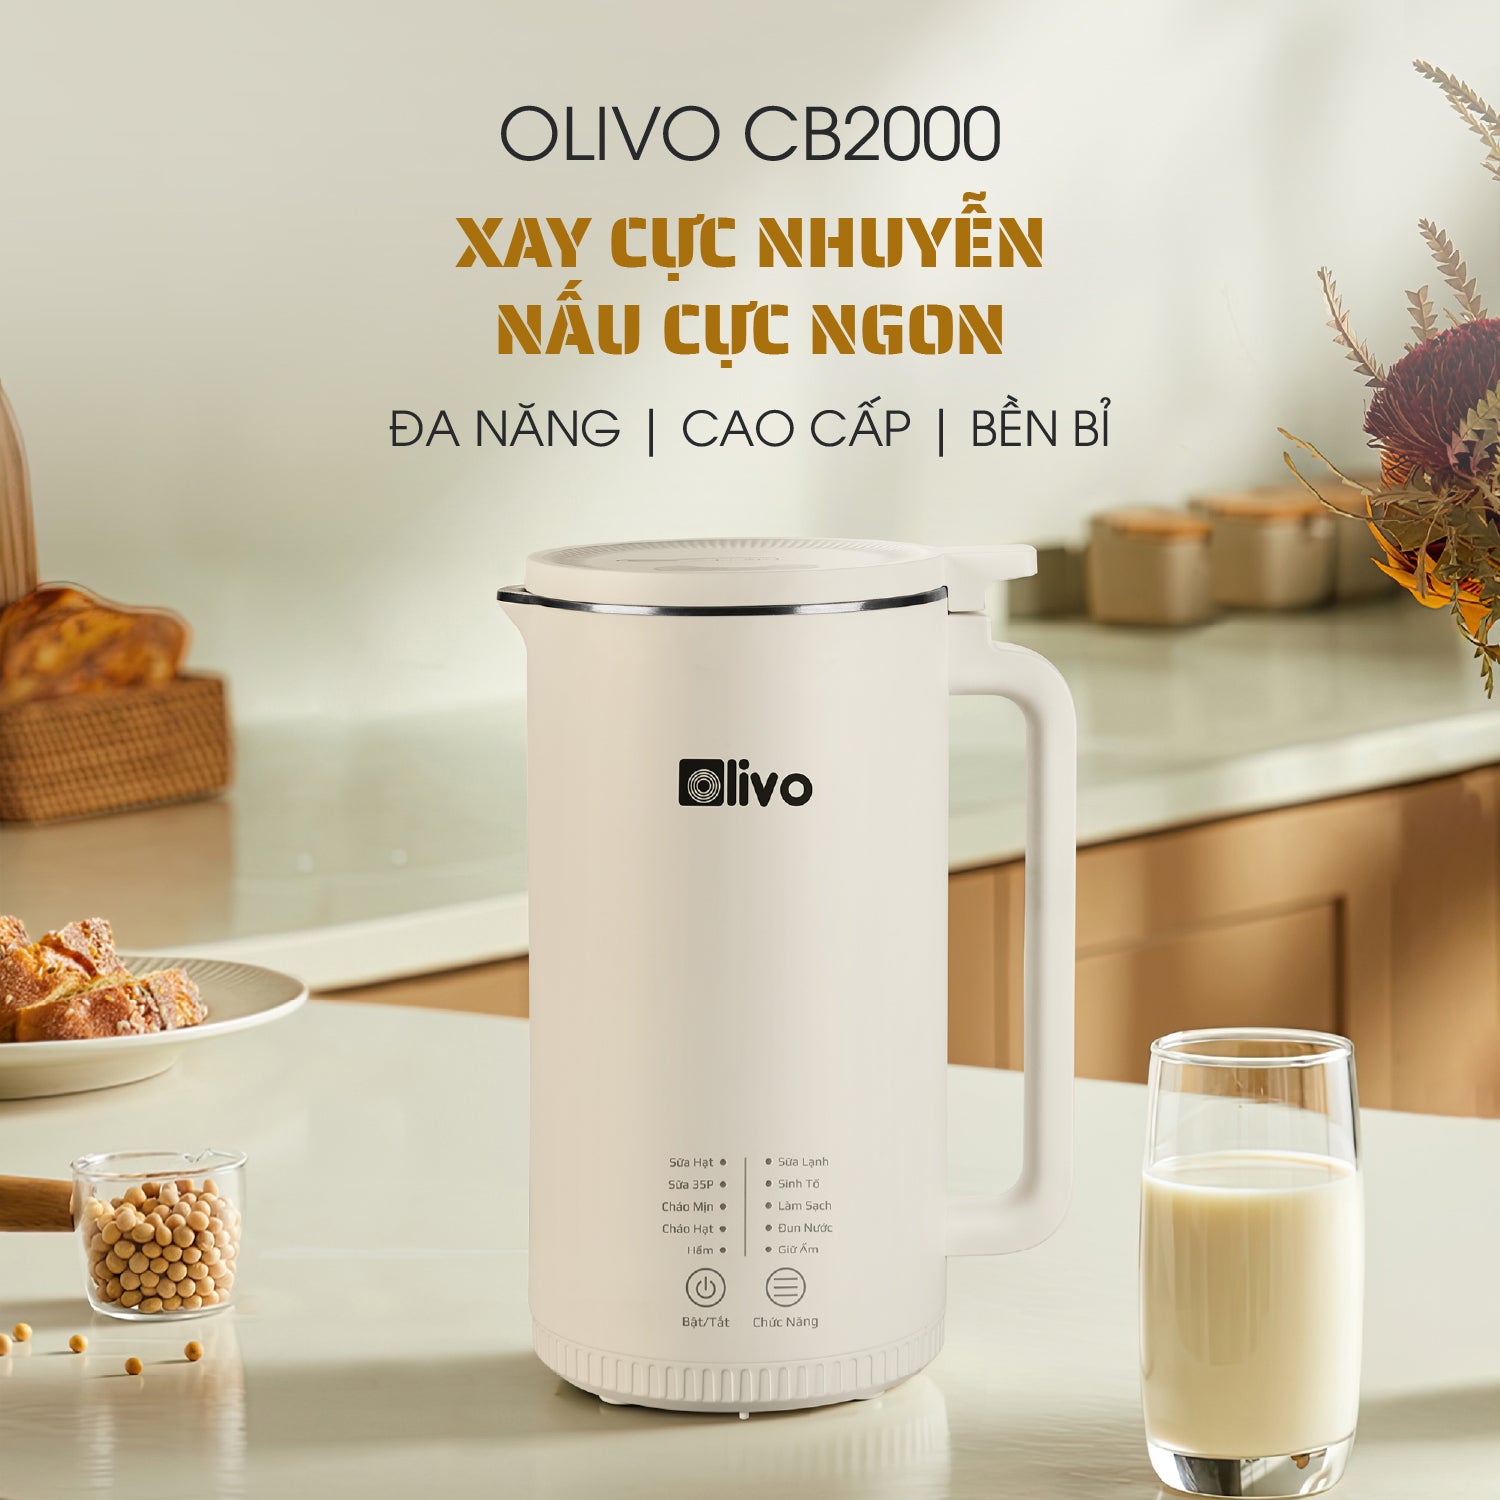 Máy Xay Nấu Đa Năng OLIVO CB2000 - Dung Tích 1000ML, Độ Ồn Thấp, Chống Trào Tuyệt Đối, Dễ Vệ Sinh